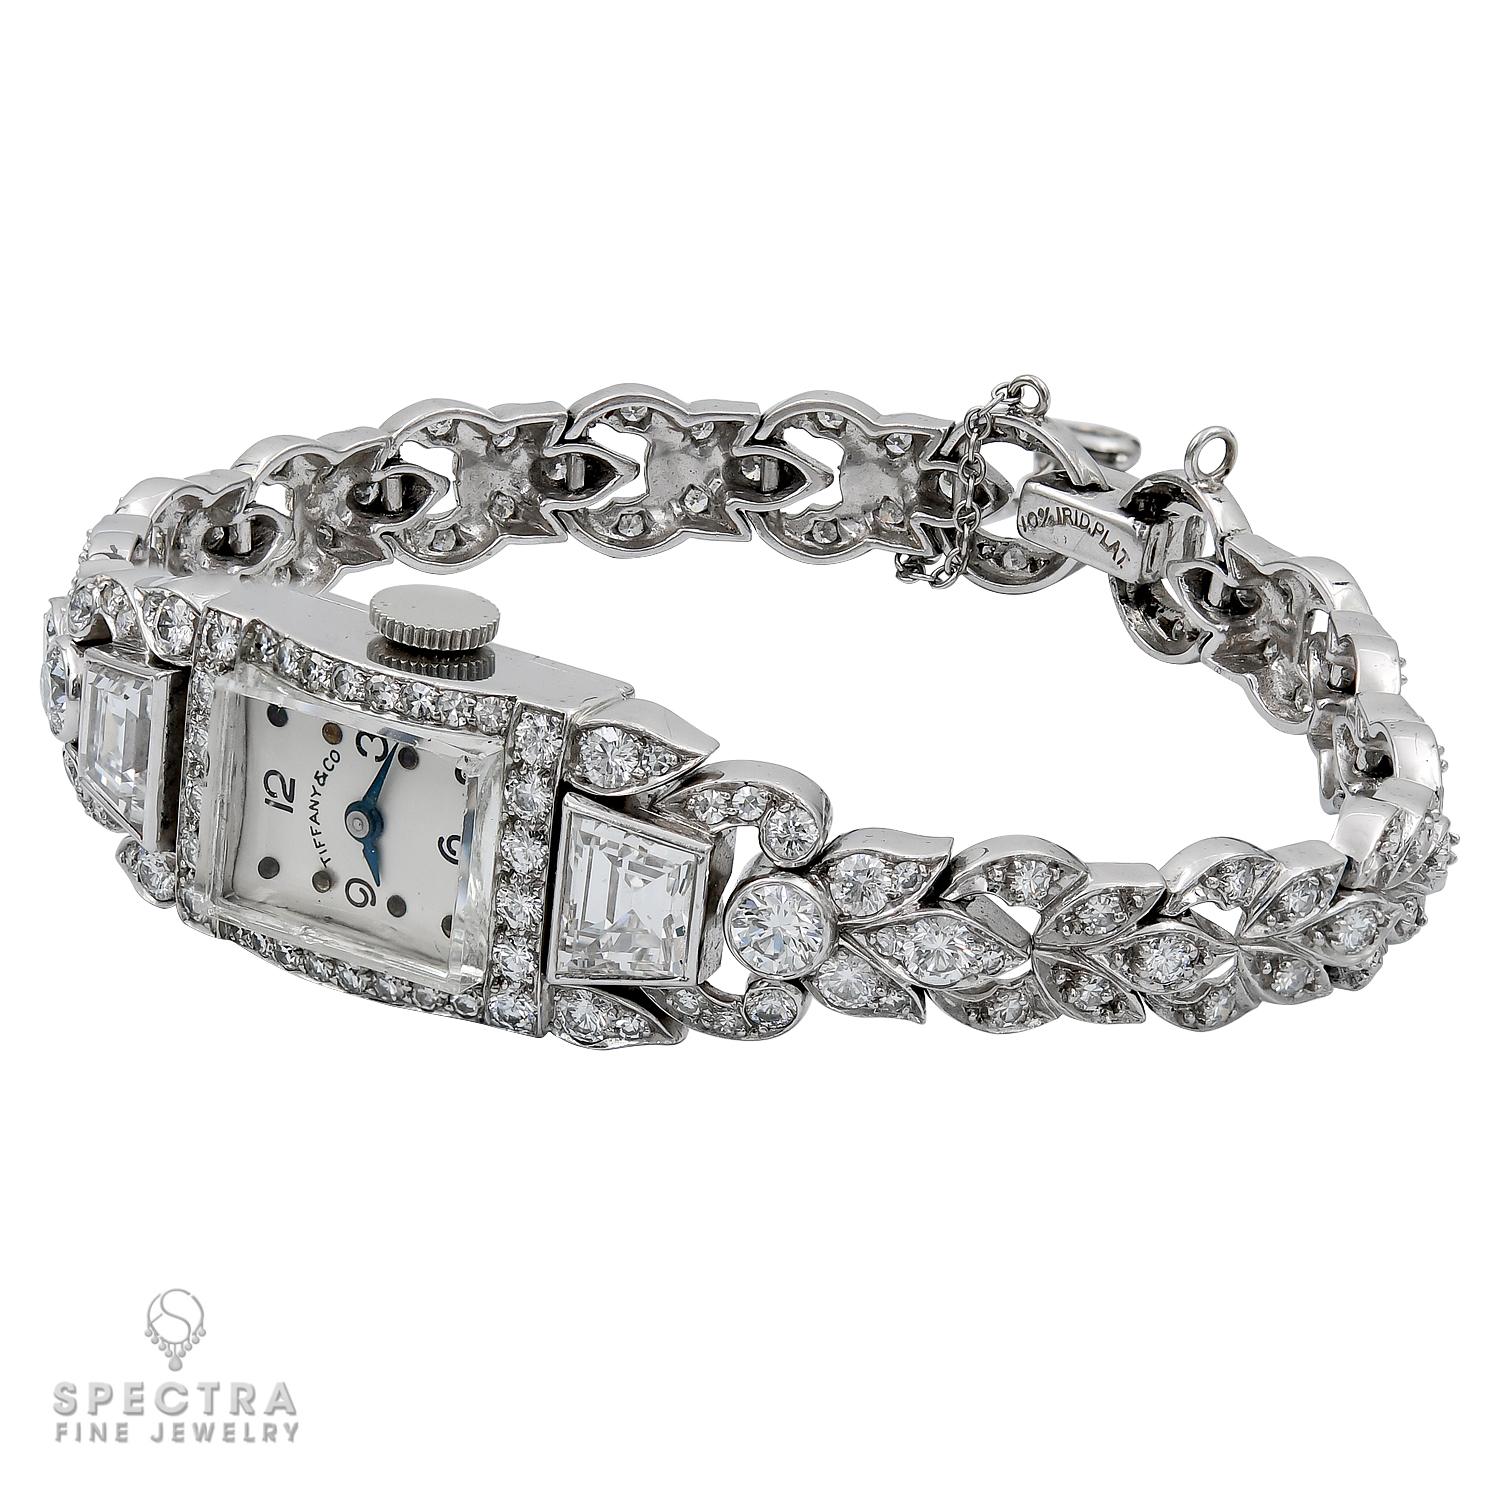 Versetzen Sie sich in die glamouröse Zeit der 1950er Jahre mit dieser exquisiten Tiffany & Co. Vintage Diamond Watch. Diese um 1950 gefertigte Uhr ist ein Zeugnis der Handwerkskunst und des Luxus, für die Tiffany & Co. bekannt ist.

Sein Herzstück